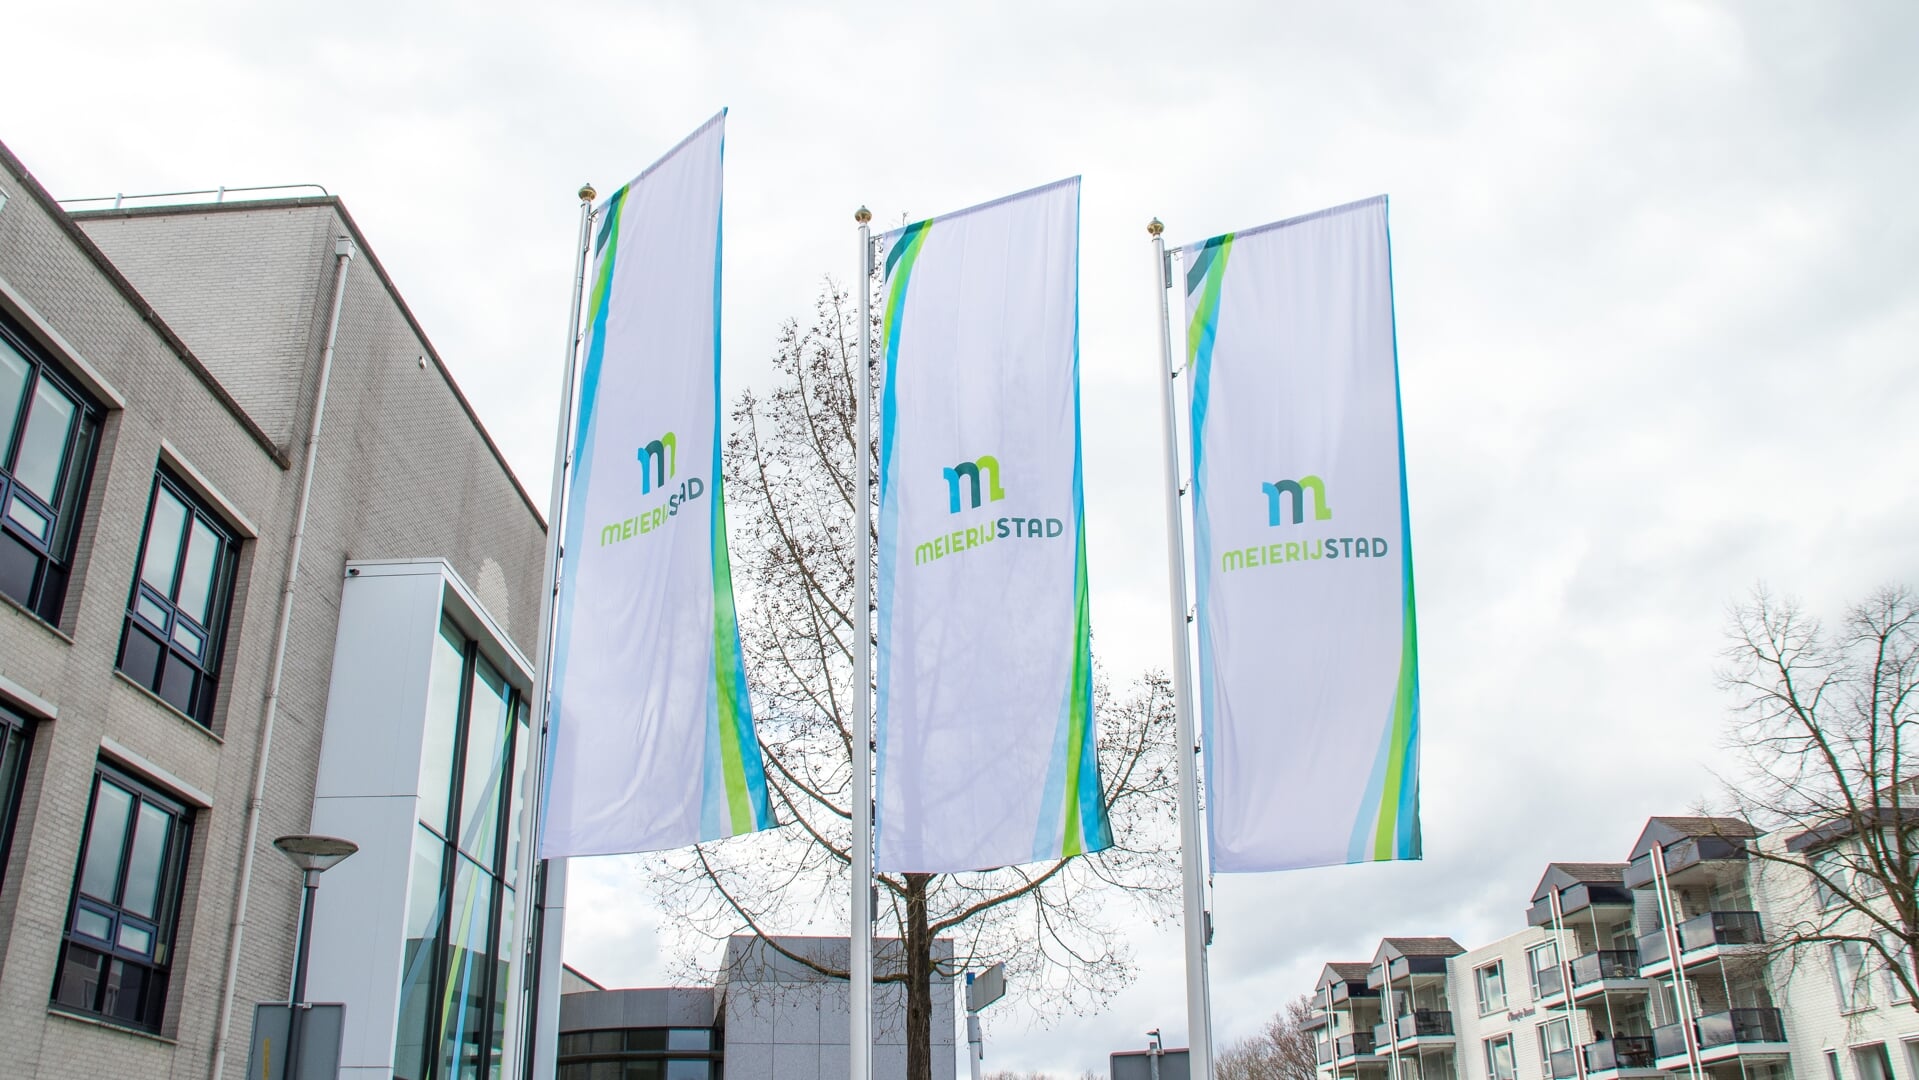 Vlaggen voor het gemeentehuis Meierijstad in Veghel